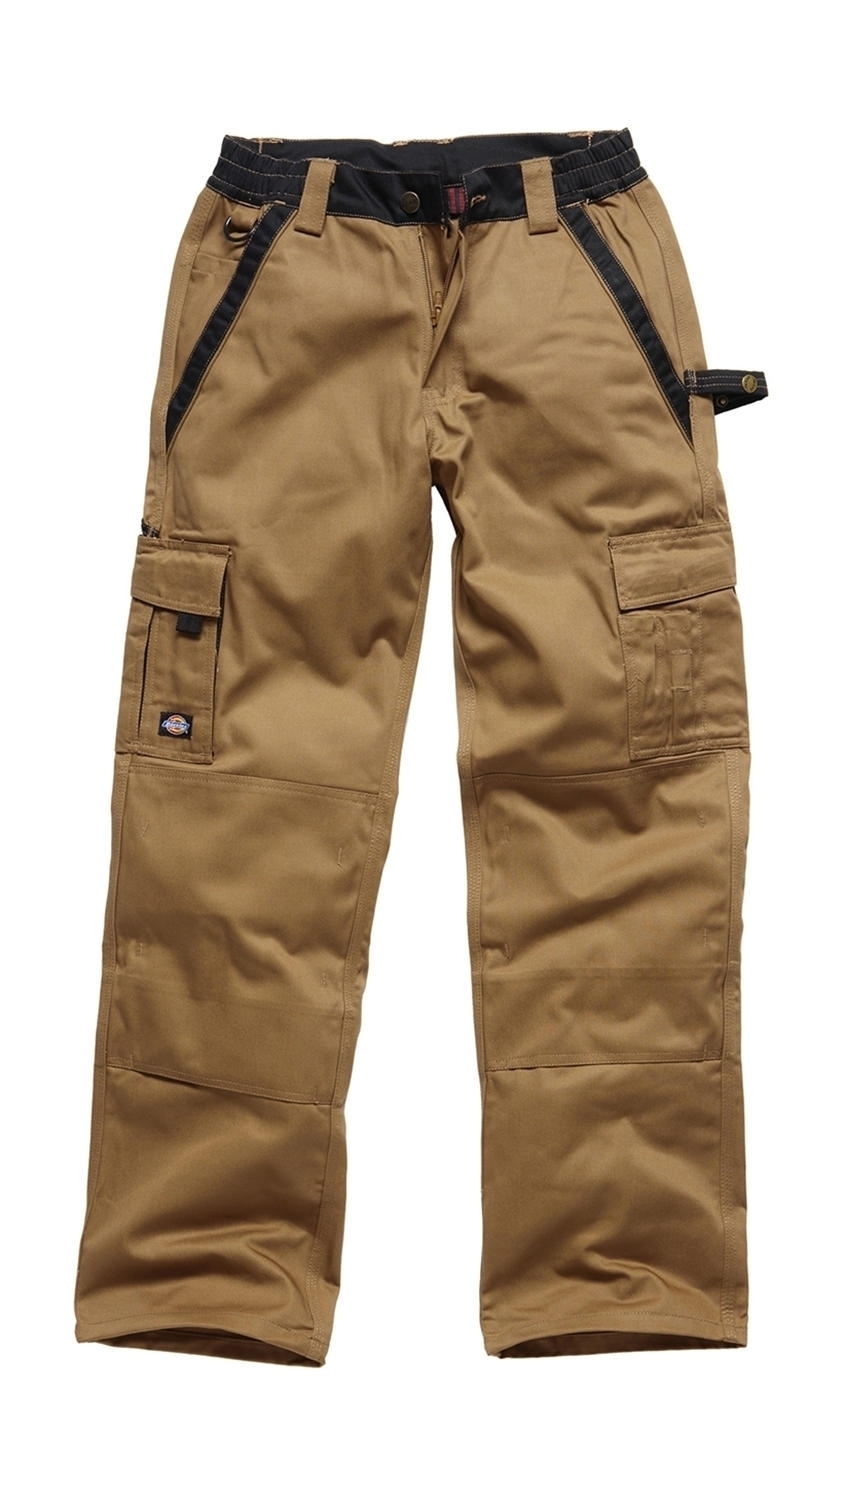 Industry300 Trousers Short Khaki/Black vert